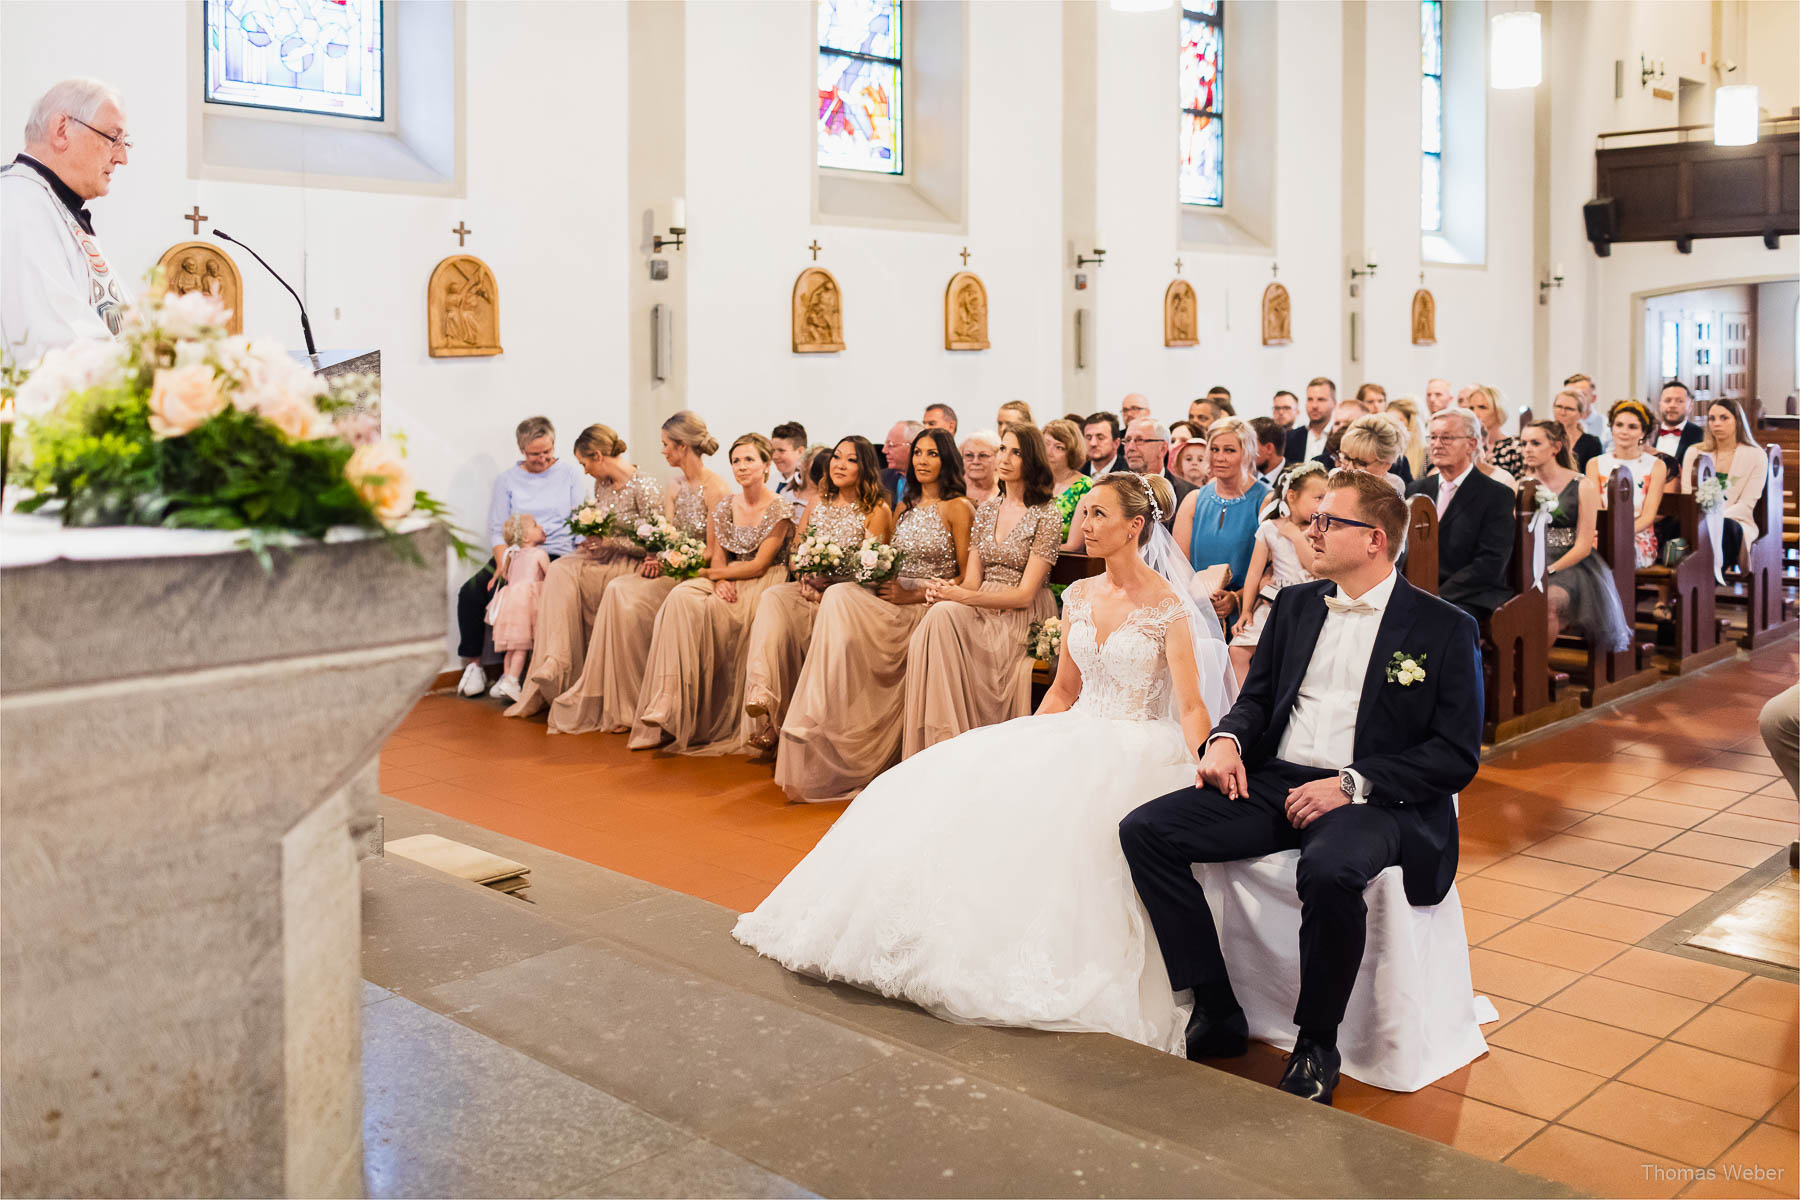 Kirchliche Hochzeit in Rastede und Hochzeitsfeier in der Scheune St. Georg Rastede, Hochzeitsfotograf Thomas Weber aus Oldenburg